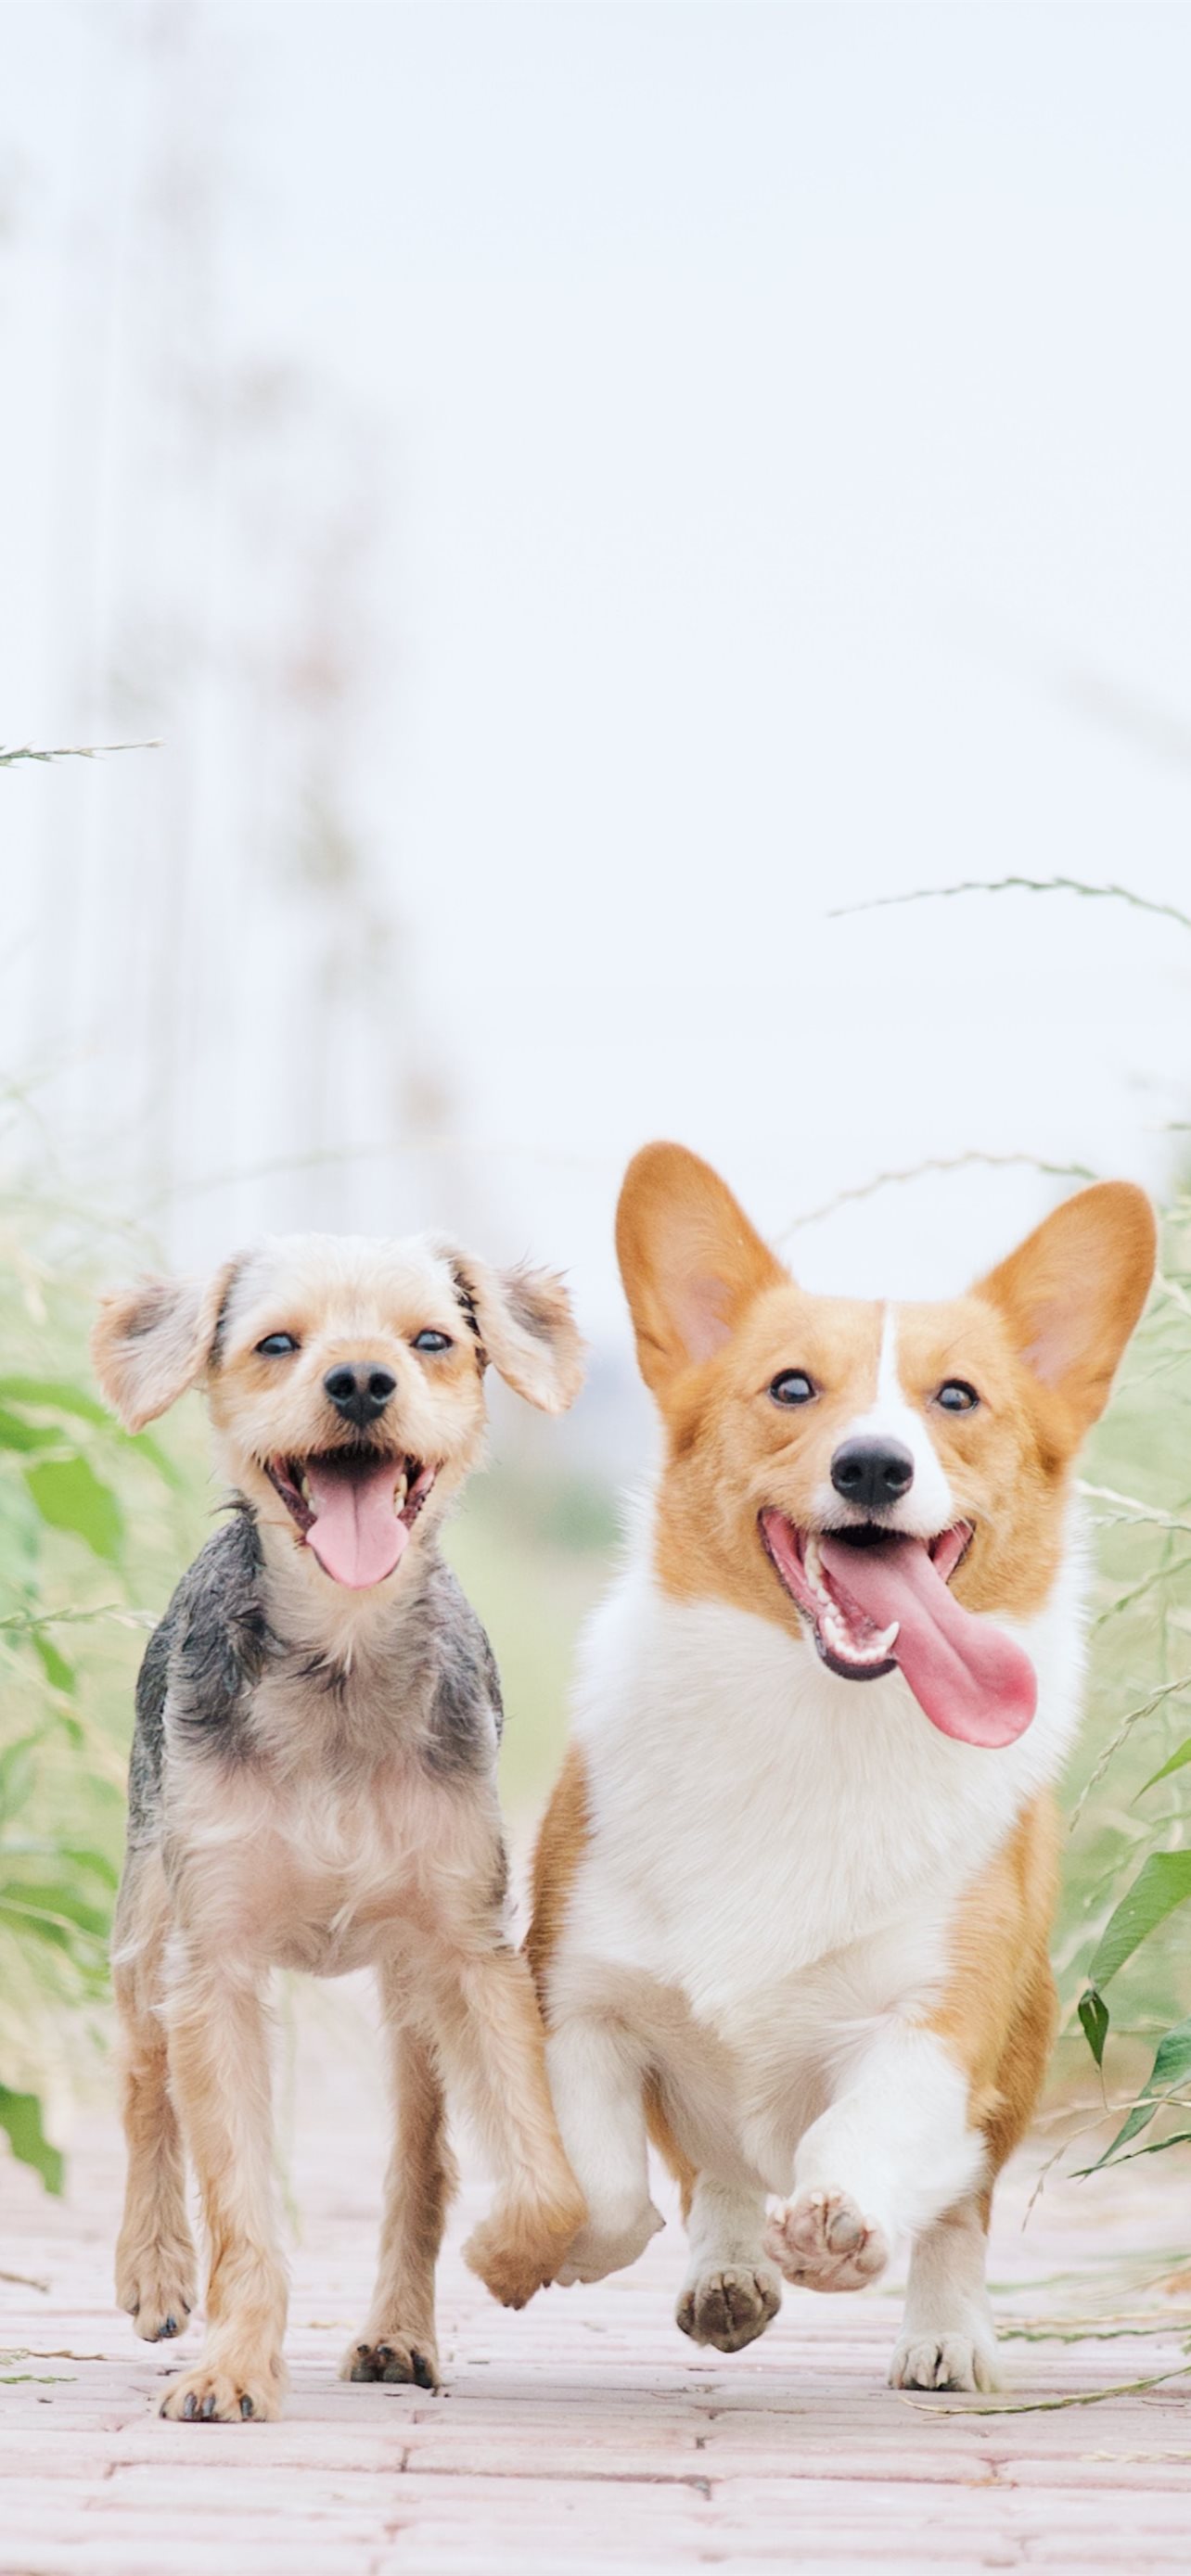 Cute dog corgi cute dogs cute puppies cute puppy dogs patterns HD phone  wallpaper  Peakpx